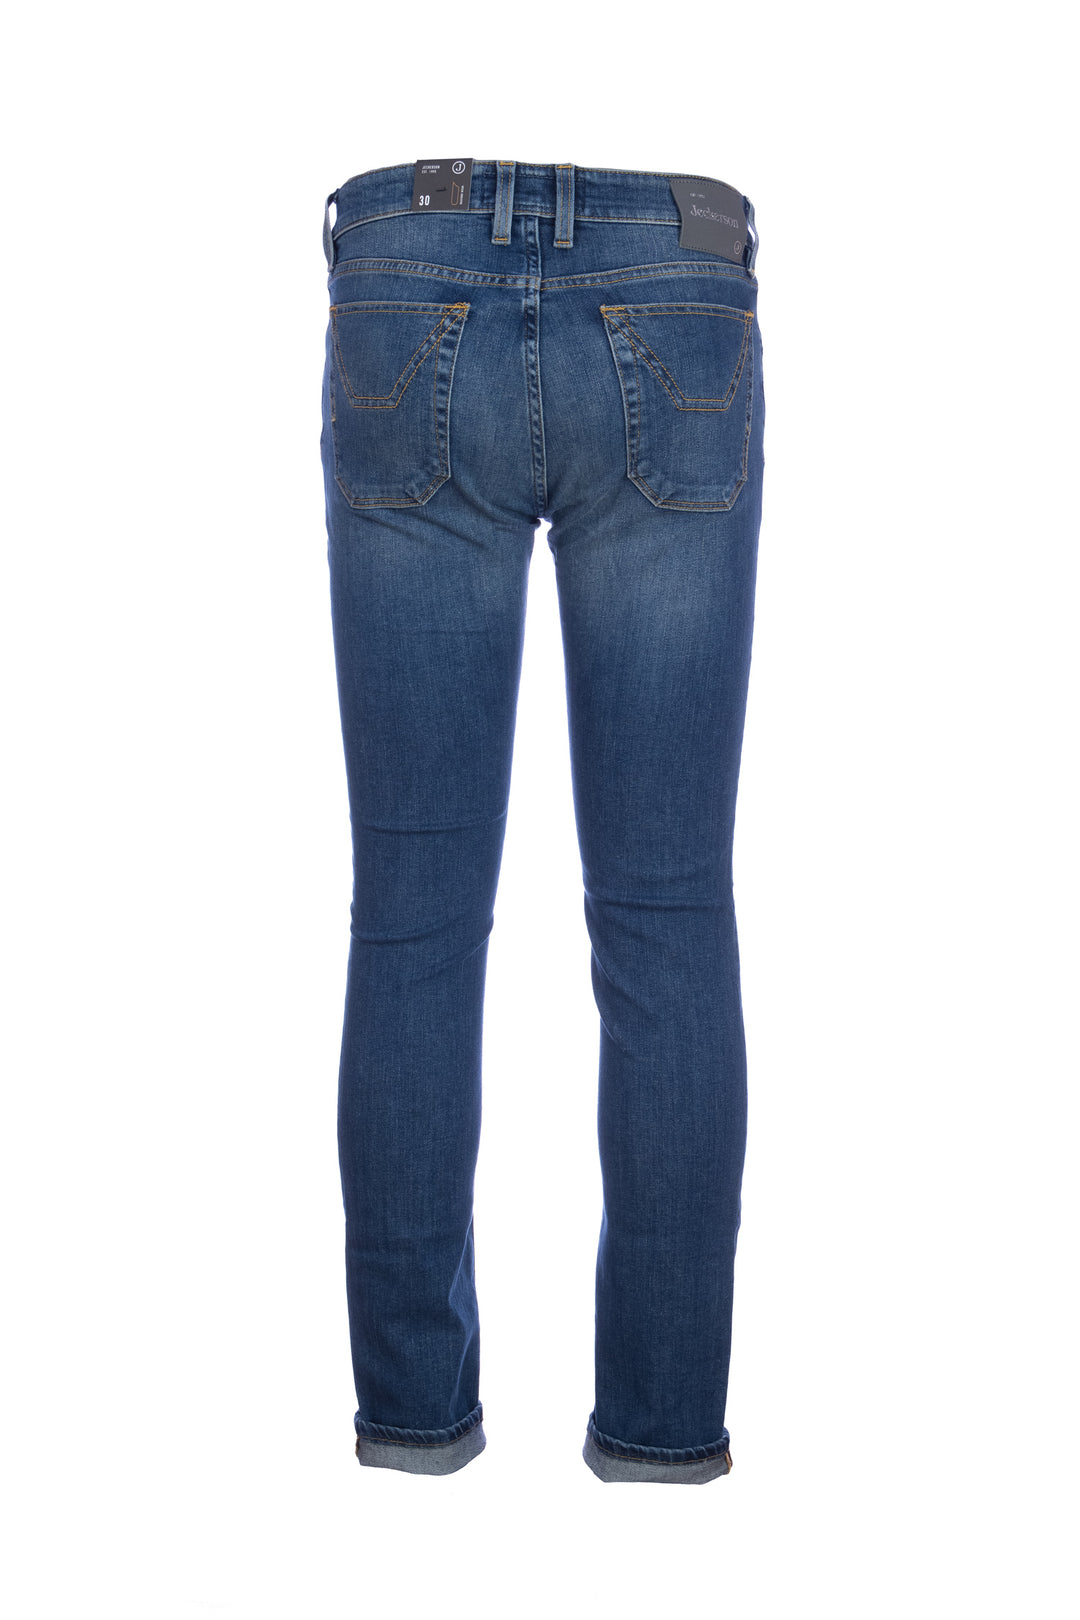 JECKERSON Jeans cinque tasche in denim stretch lavaggio medio con toppe  JKUPA077 KI001